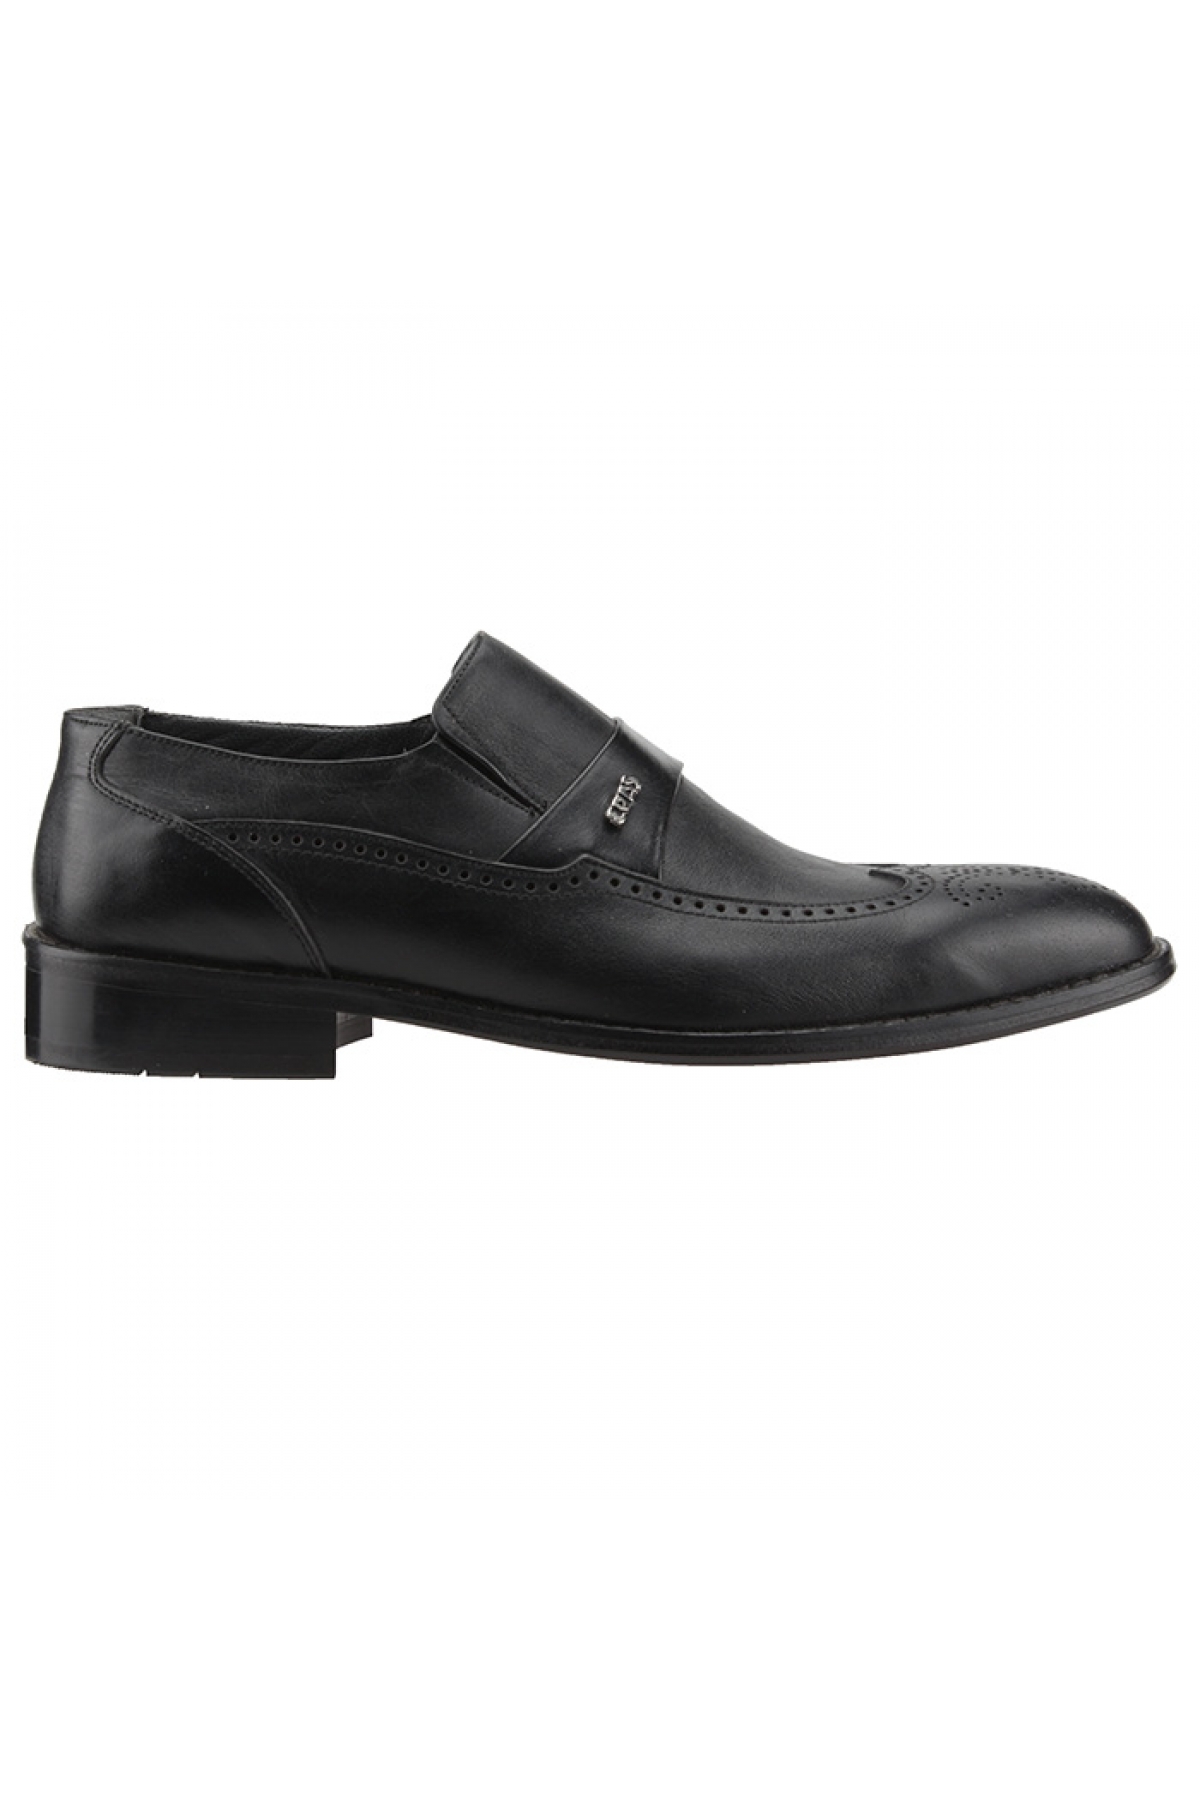 Flo Epaş 13207 Siyah % 100 Deri Günlük Klasik Erkek Ayakkabı. 1